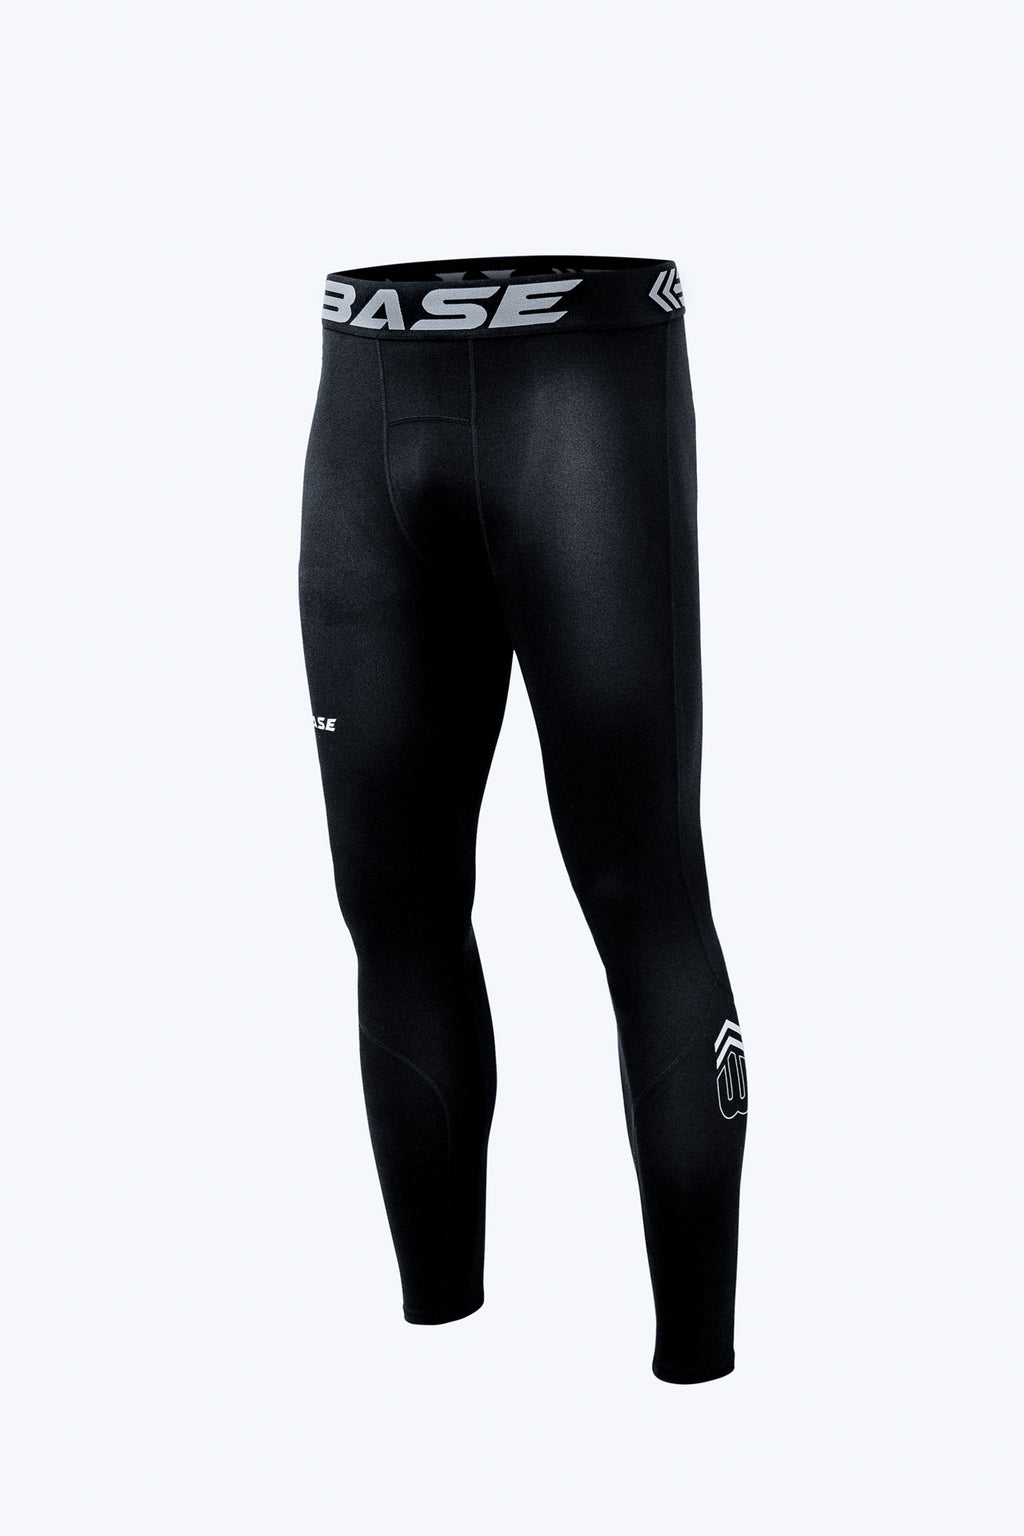 BASE Men's Performance Tights - Black – BASE Compression